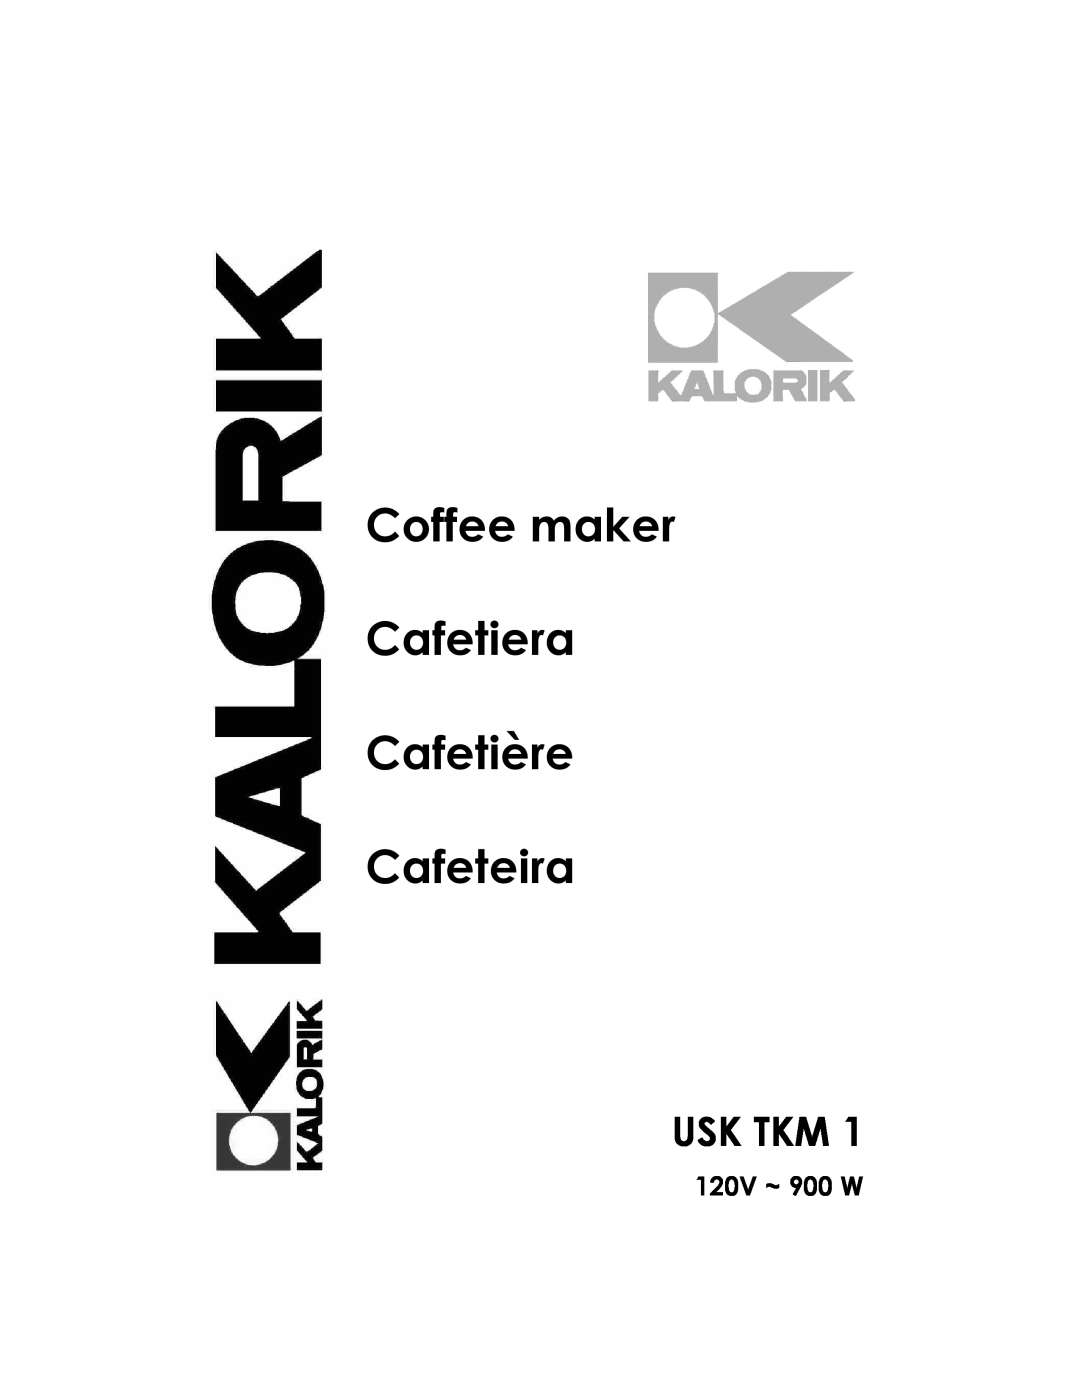 Kalorik USK TKM 1 manual Usk Tkm, 120V ~ 900 W, Coffee maker Cafetiera Cafetière Cafeteira 